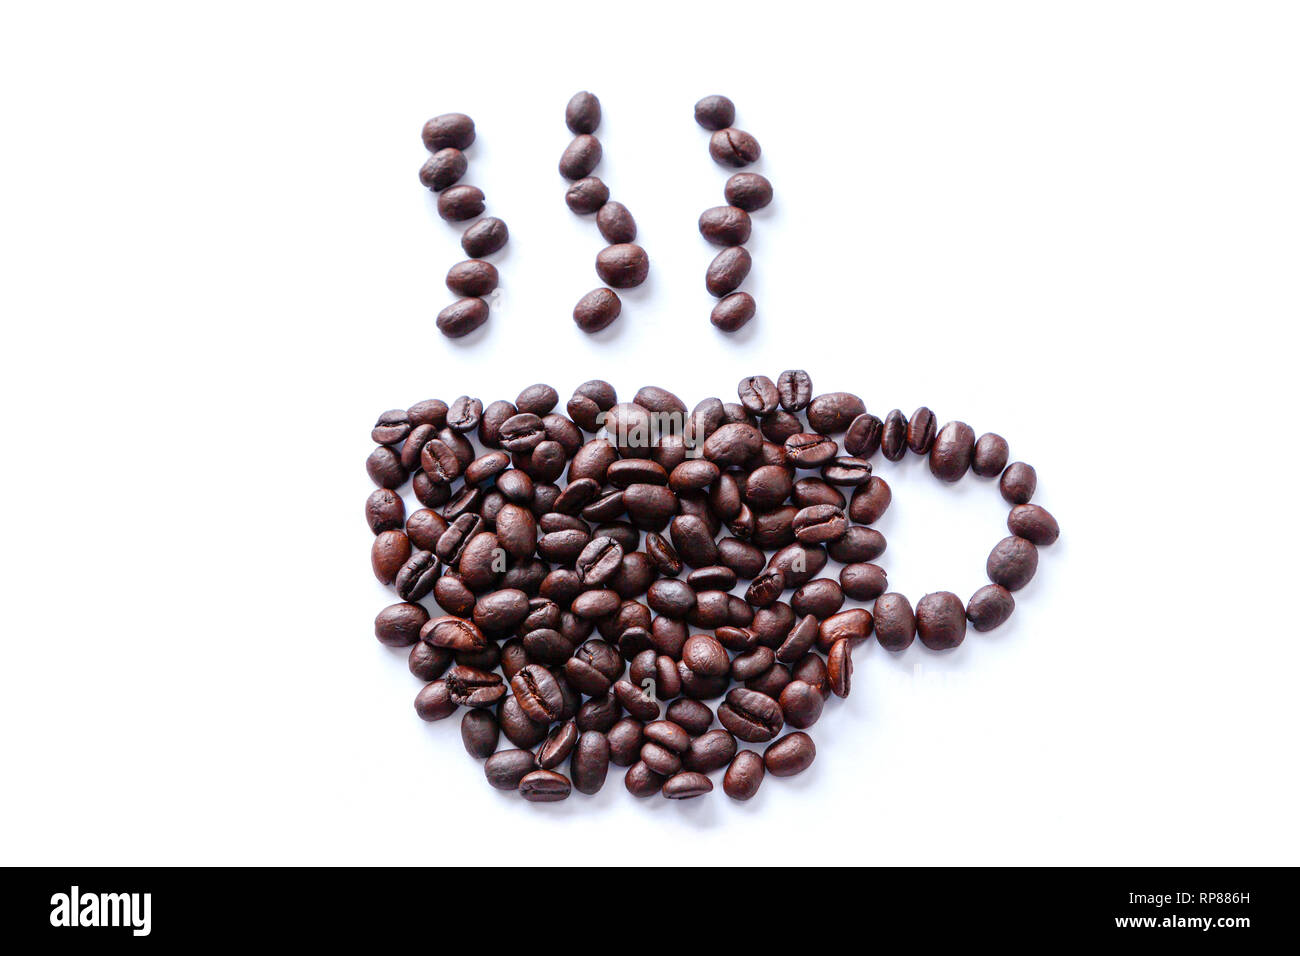 Les grains de café torréfiés dispersées dans une forme d'une tasse avec l'augmentation de la vapeur. Isolé sur fond blanc. Banque D'Images